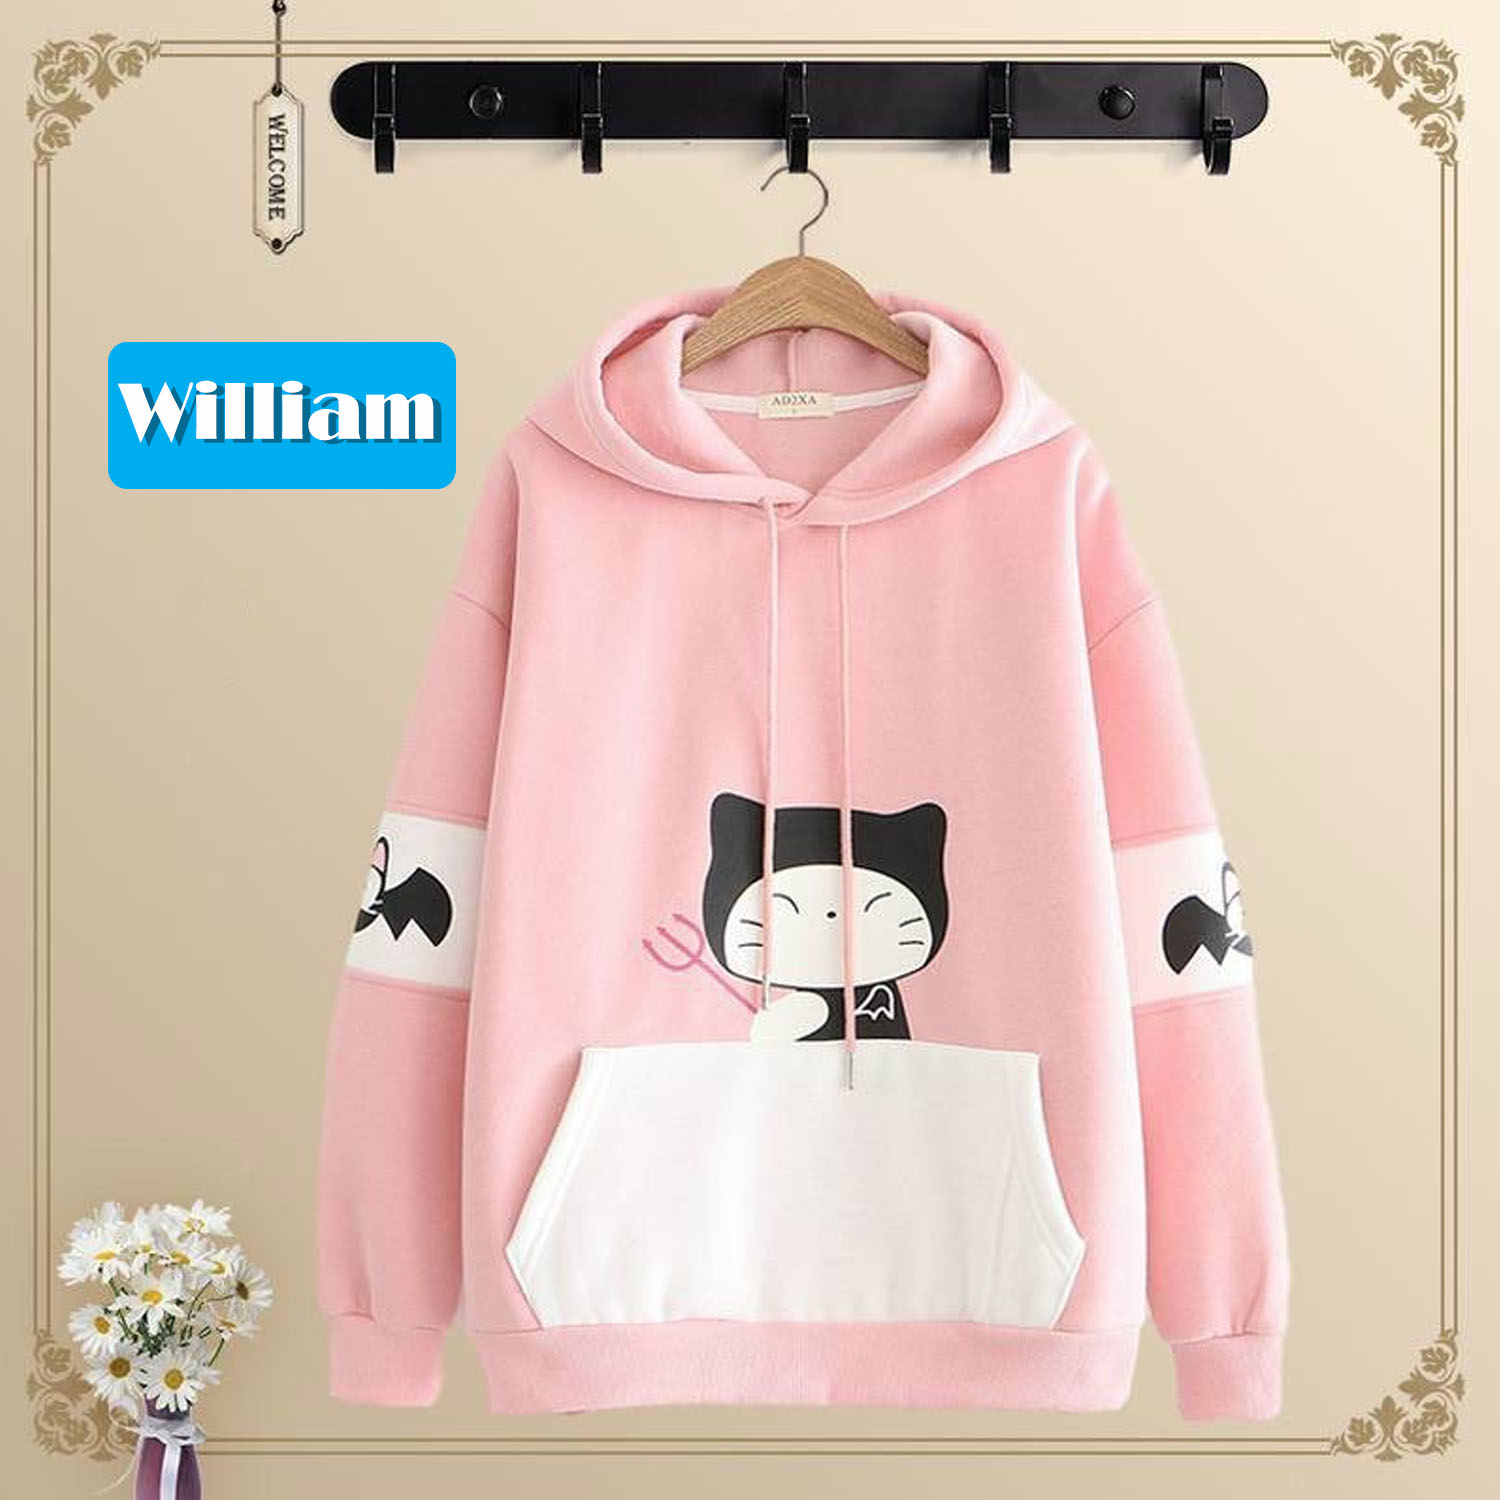 [HCM]Áo hoodie nữ phối màu giữ ấm - Áo khoác nỉ chui đầu dễ thương William Store - NL174